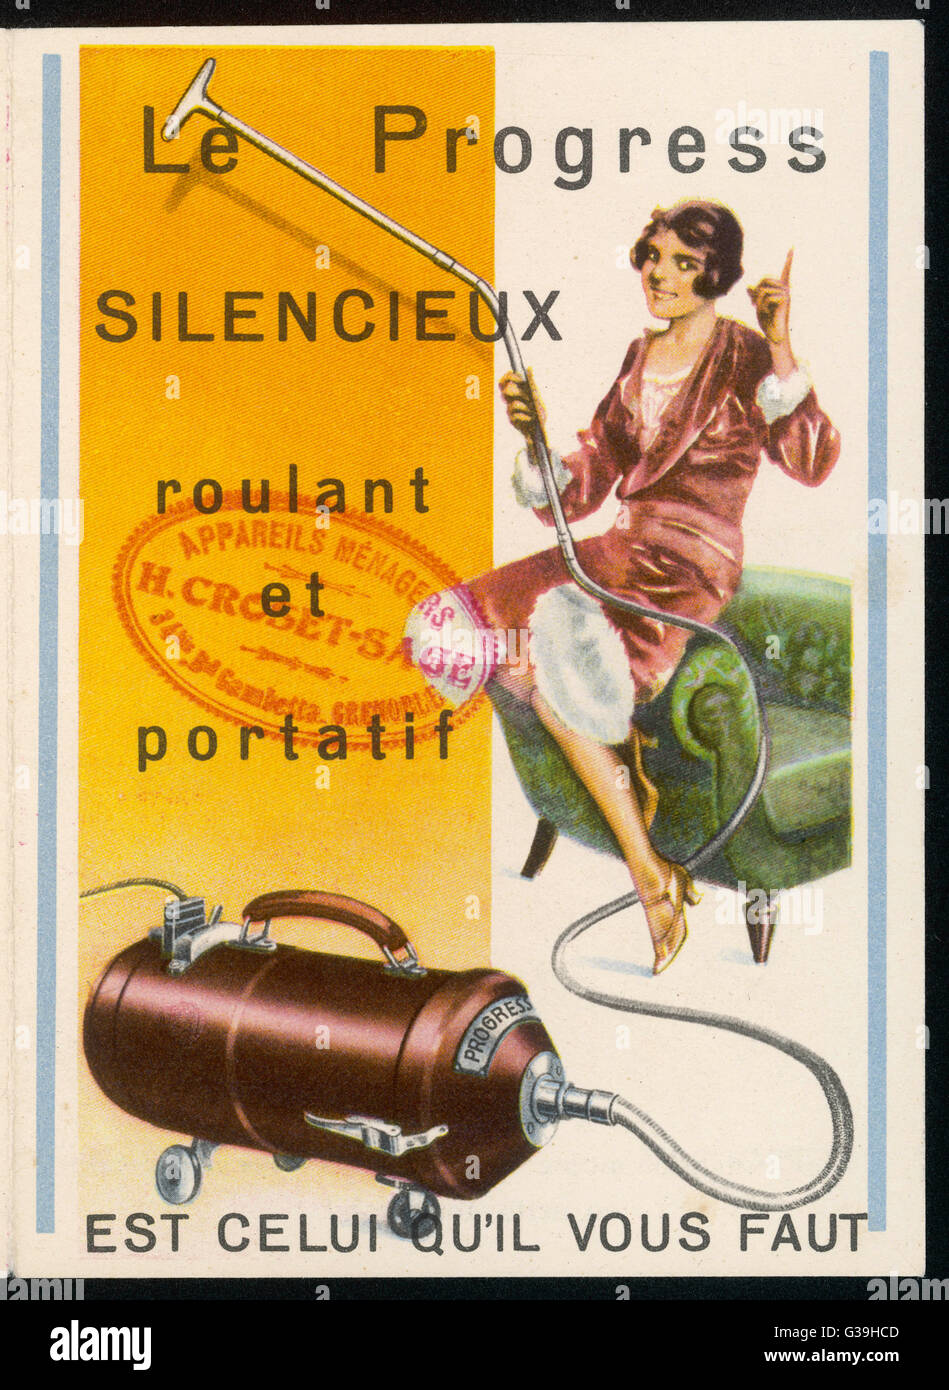 Französische Hausfrau mit diesem Staubsauger, die wie die Werbung sagt, sie  nur Datum mussten: 1920er Jahre Stockfotografie - Alamy